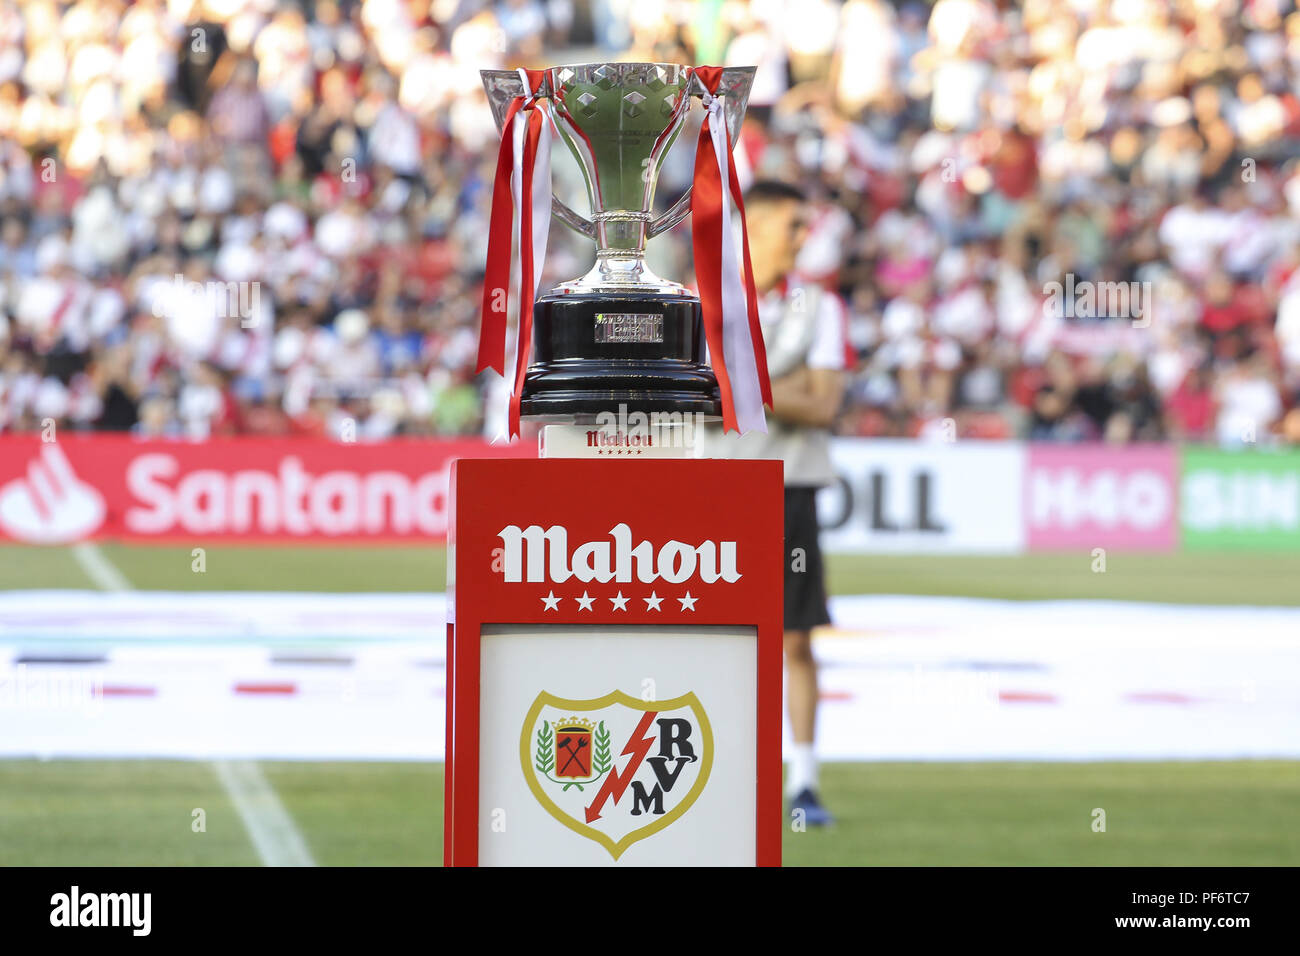 Trofeo de Liga durante la liga española, la Liga, partido de fútbol entre el Rayo Vallecano y Sevilla FC el 19 de agosto de 2018, en el Estadio en